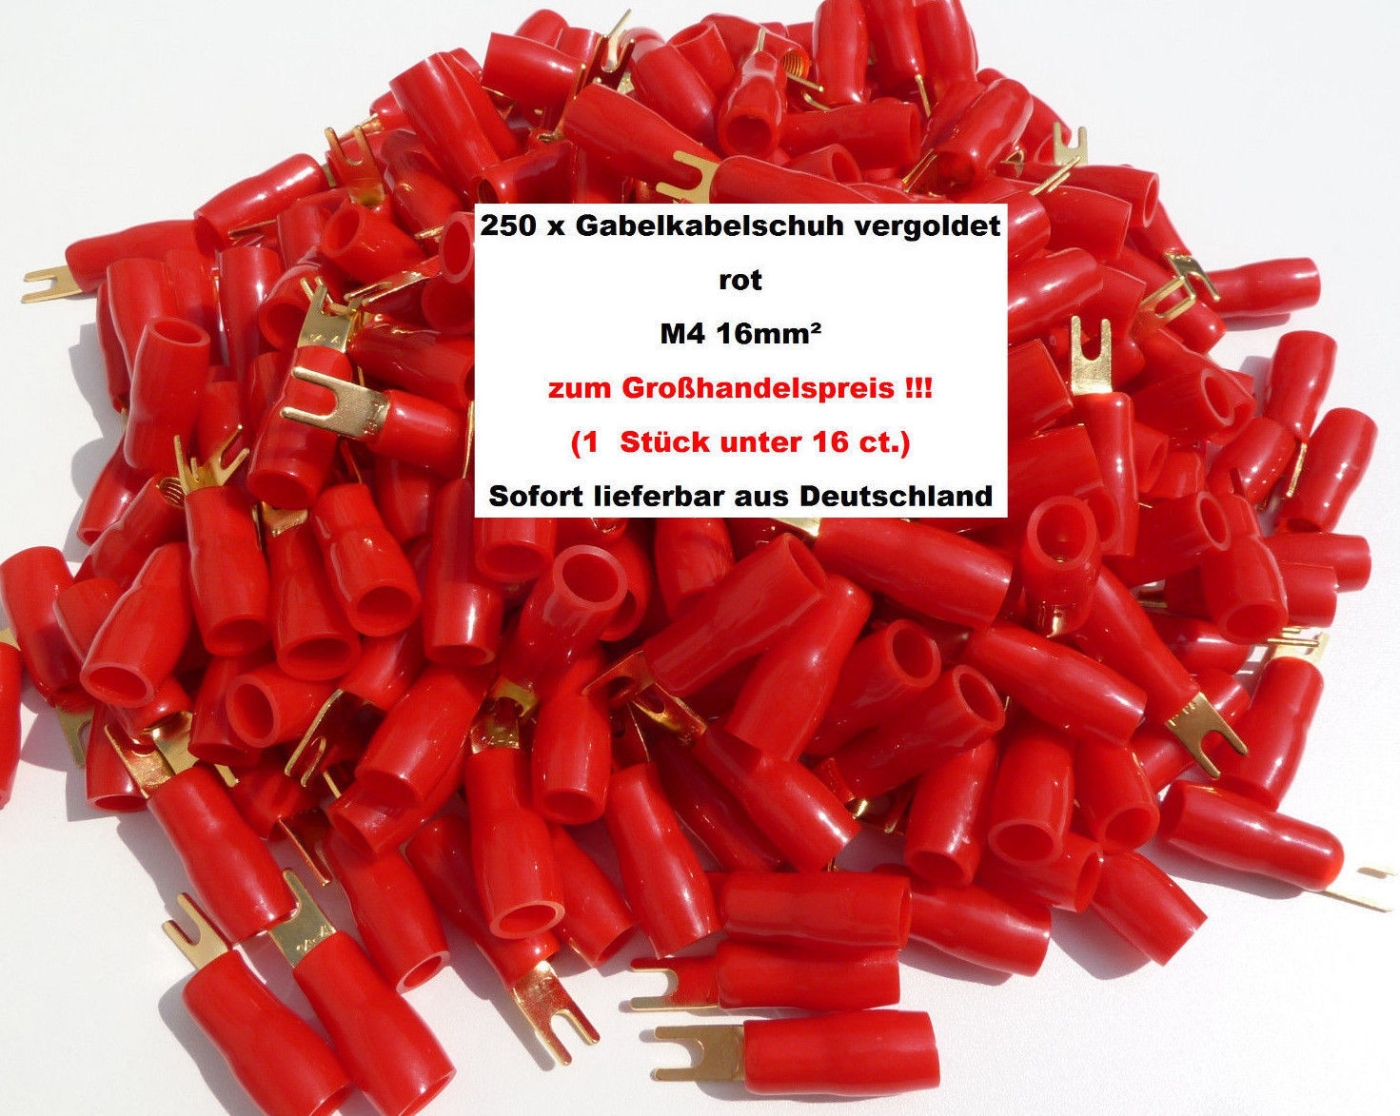 250 x AIV Gabel Kabelschuh rot vergoldet 16mm- M4 zum Grohandelspreis!! 60213